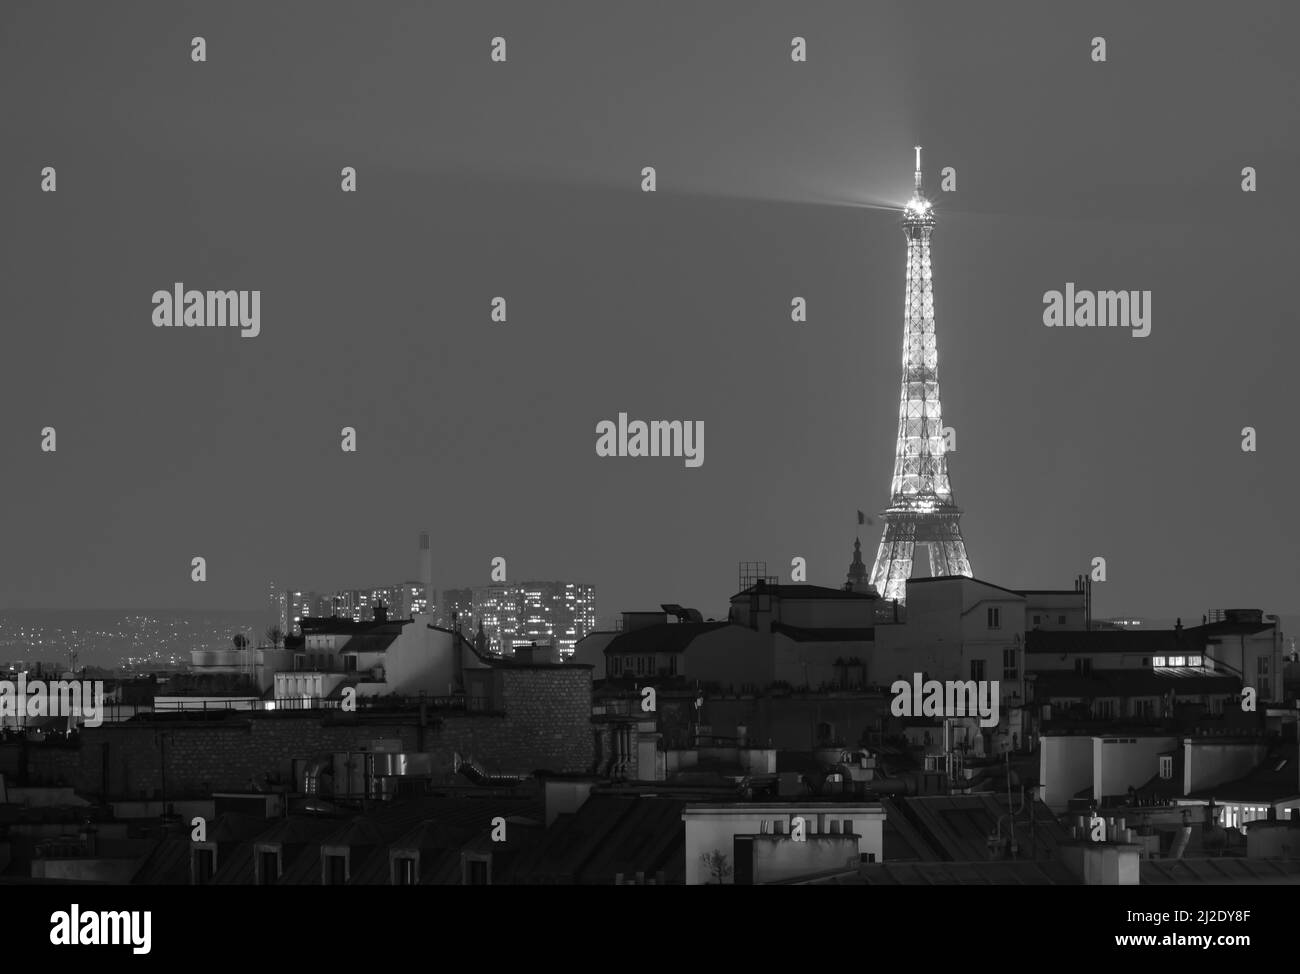 Vue sur la superbe Tour Eiffel illuminée au-dessus des toits de Paris en noir et blanc Banque D'Images